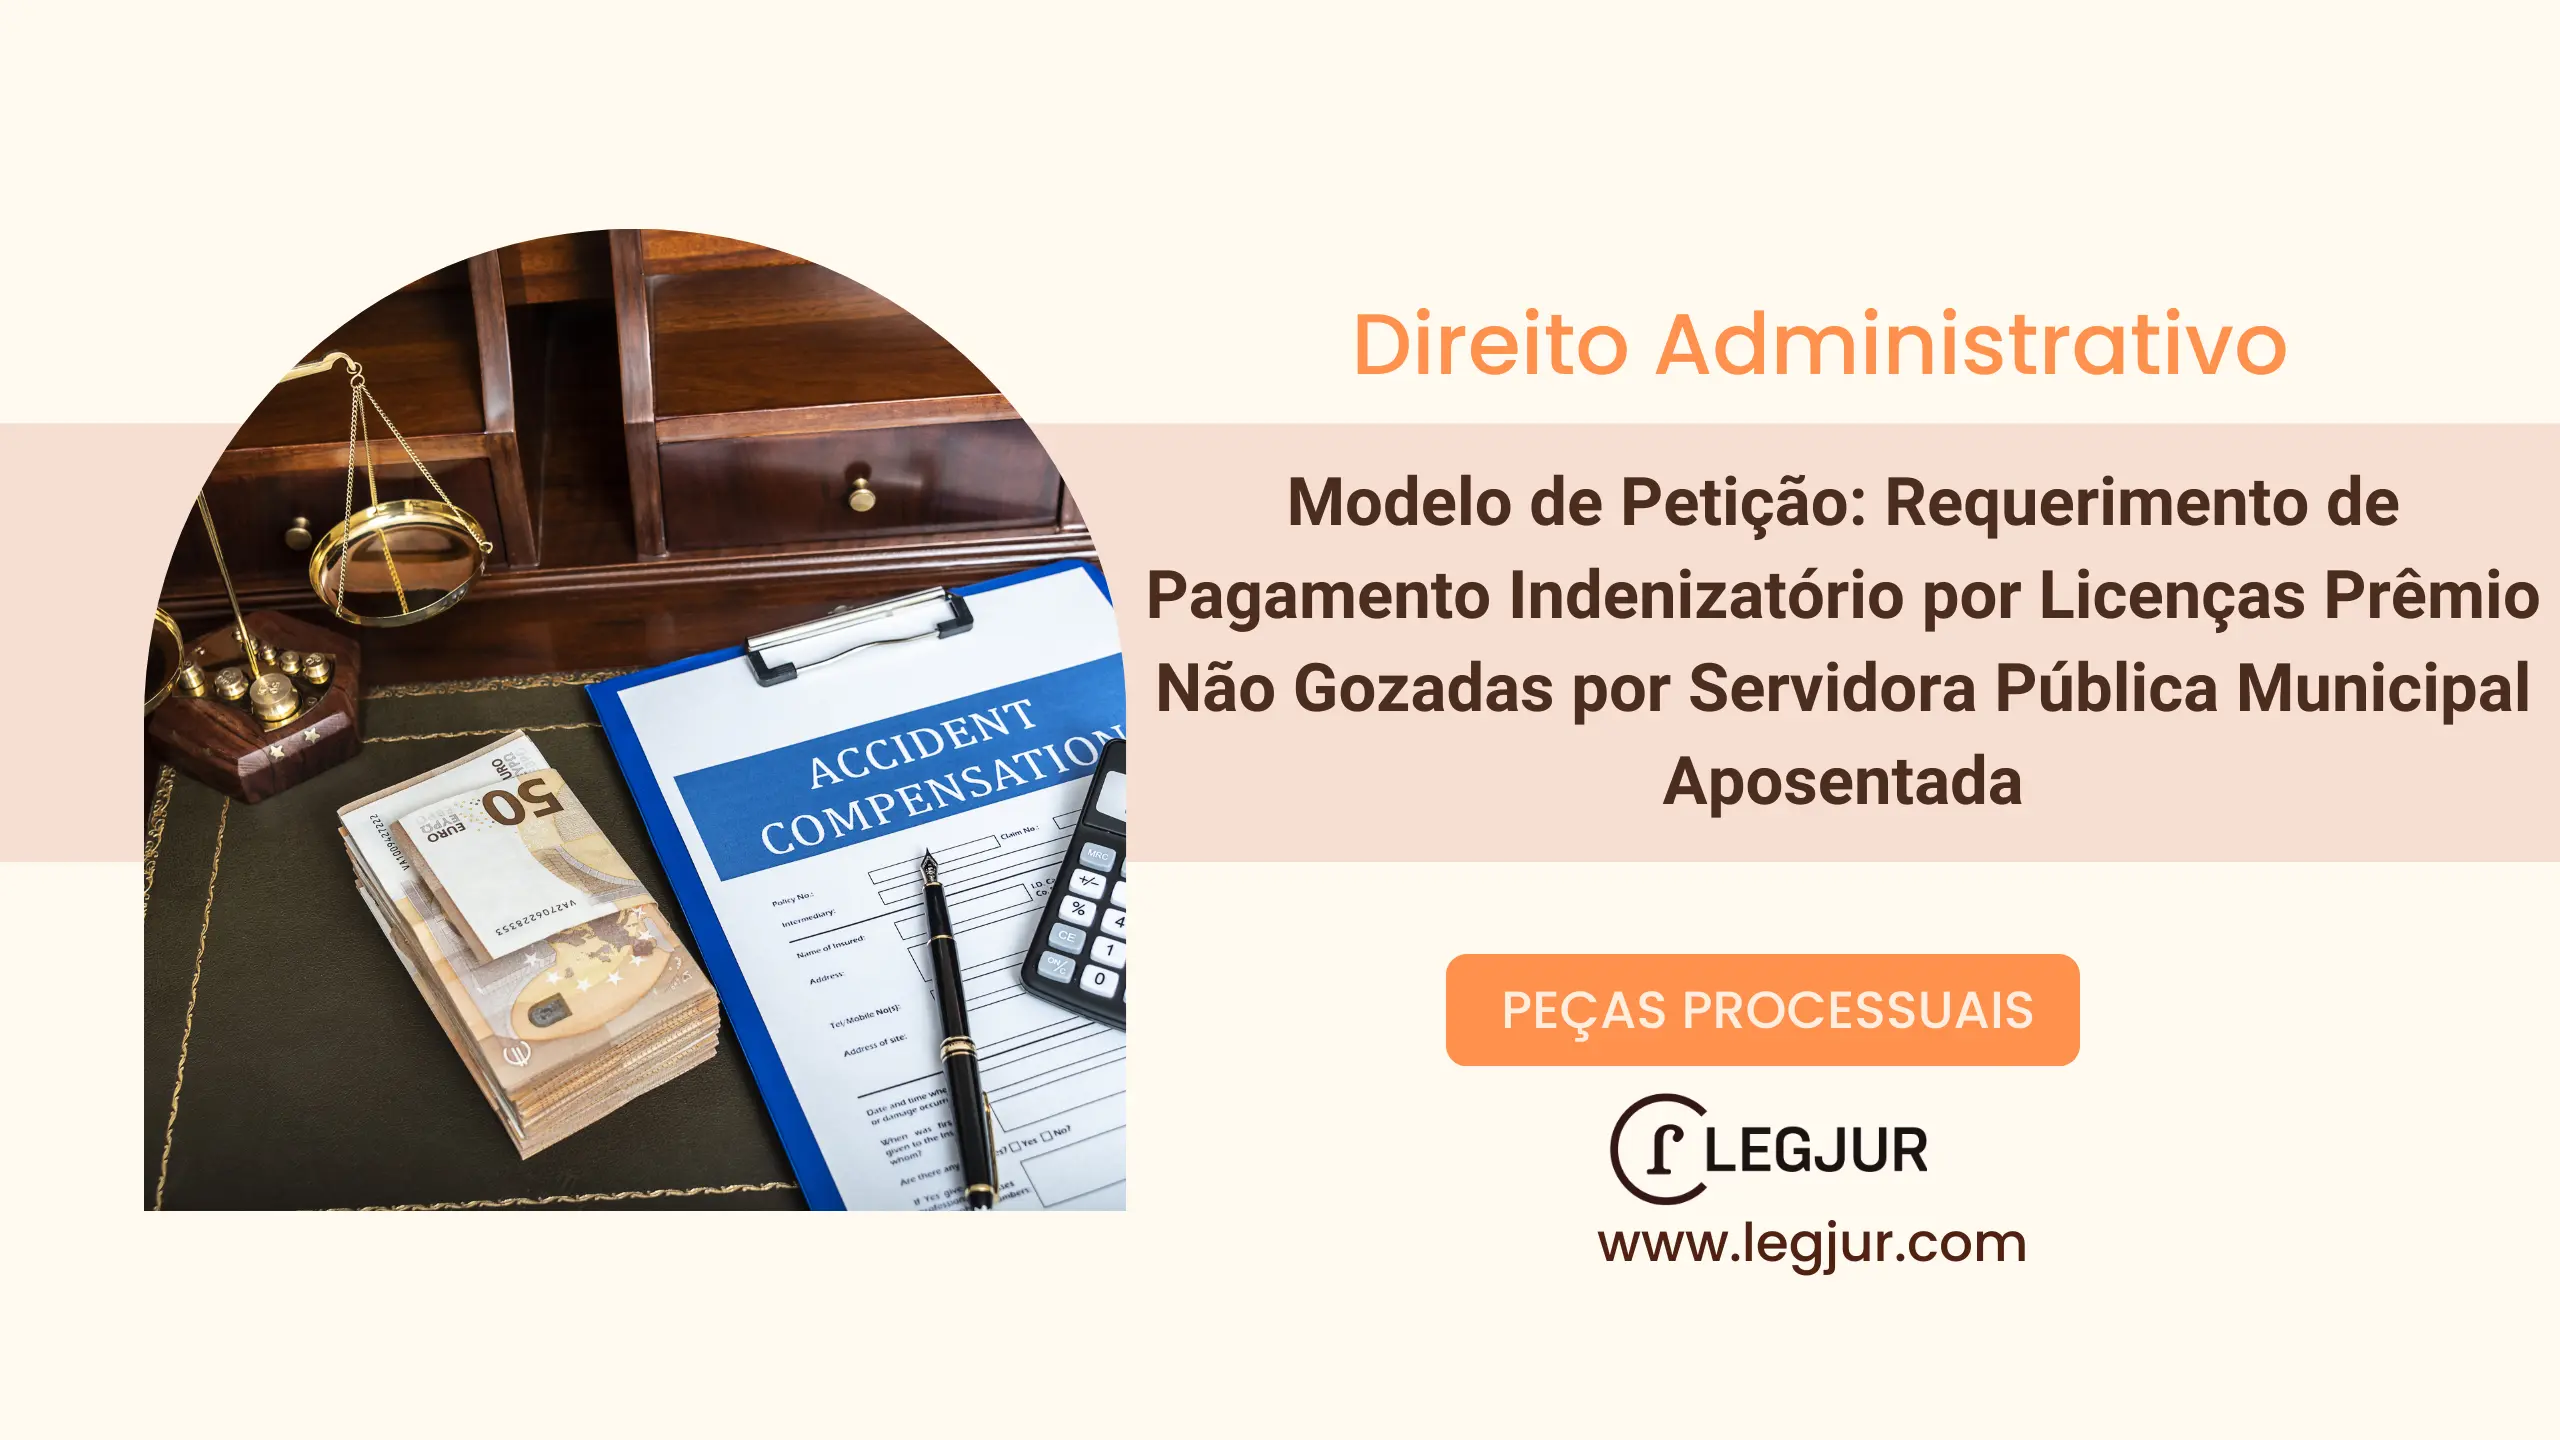 Modelo de Petição: Requerimento de Pagamento Indenizatório por Licenças Prêmio Não Gozadas por Servidora Pública Municipal Aposentada